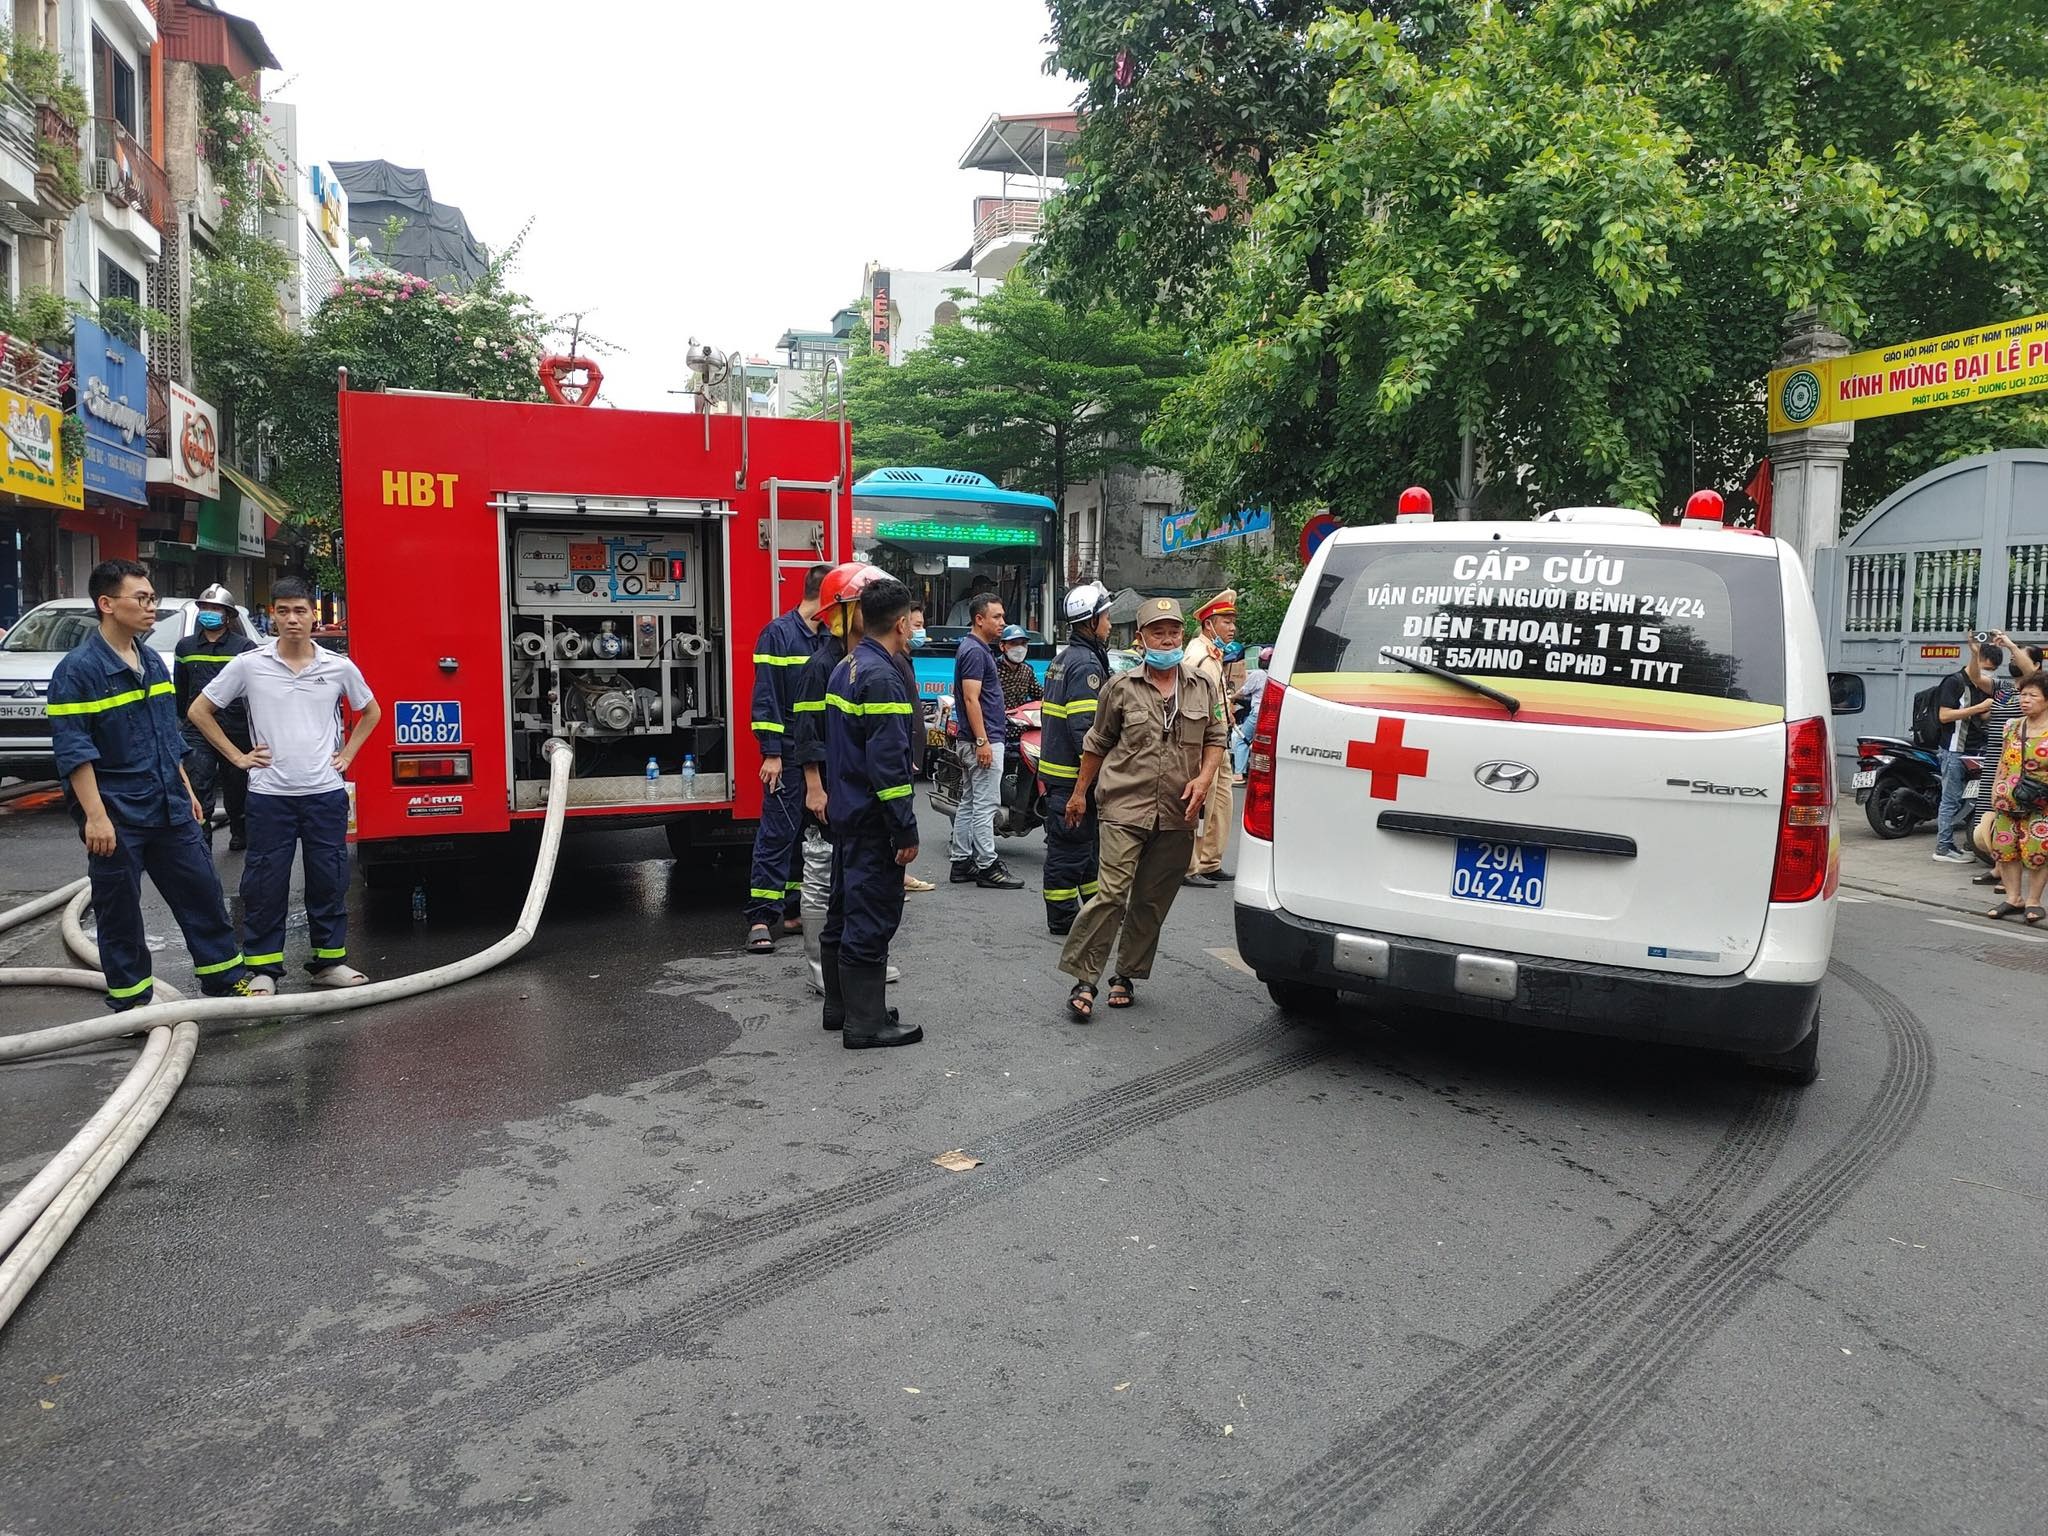 Vụ cháy nhà 6 tầng ở Hà Nội: Cả 3 nạn nhân đã tử vong - 3